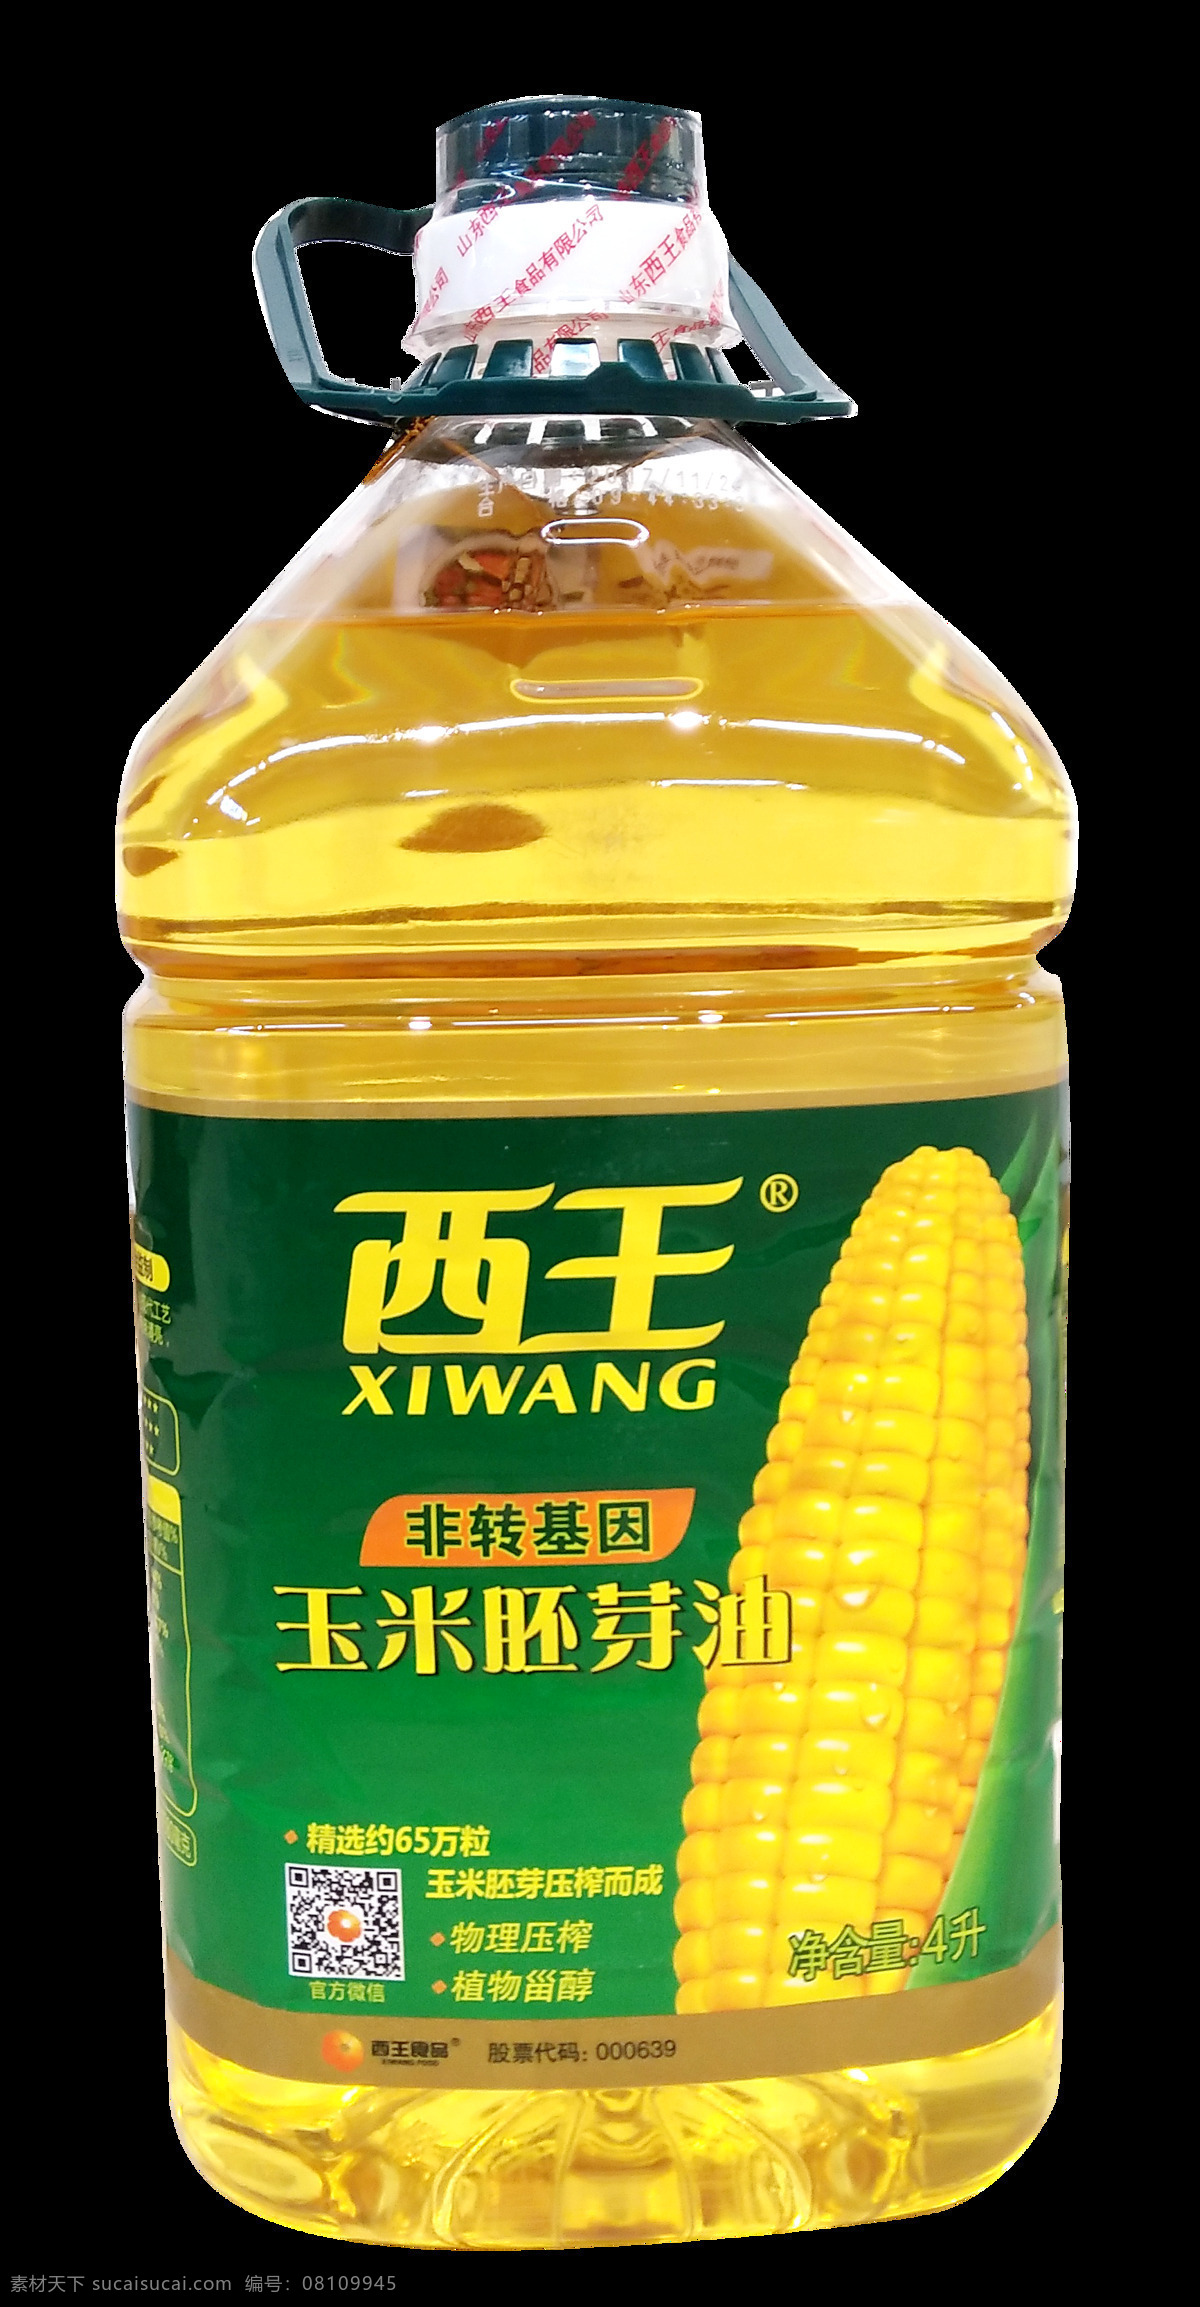 西王玉米油 玉米油 油 西王 产品拍摄 生活百科 生活素材